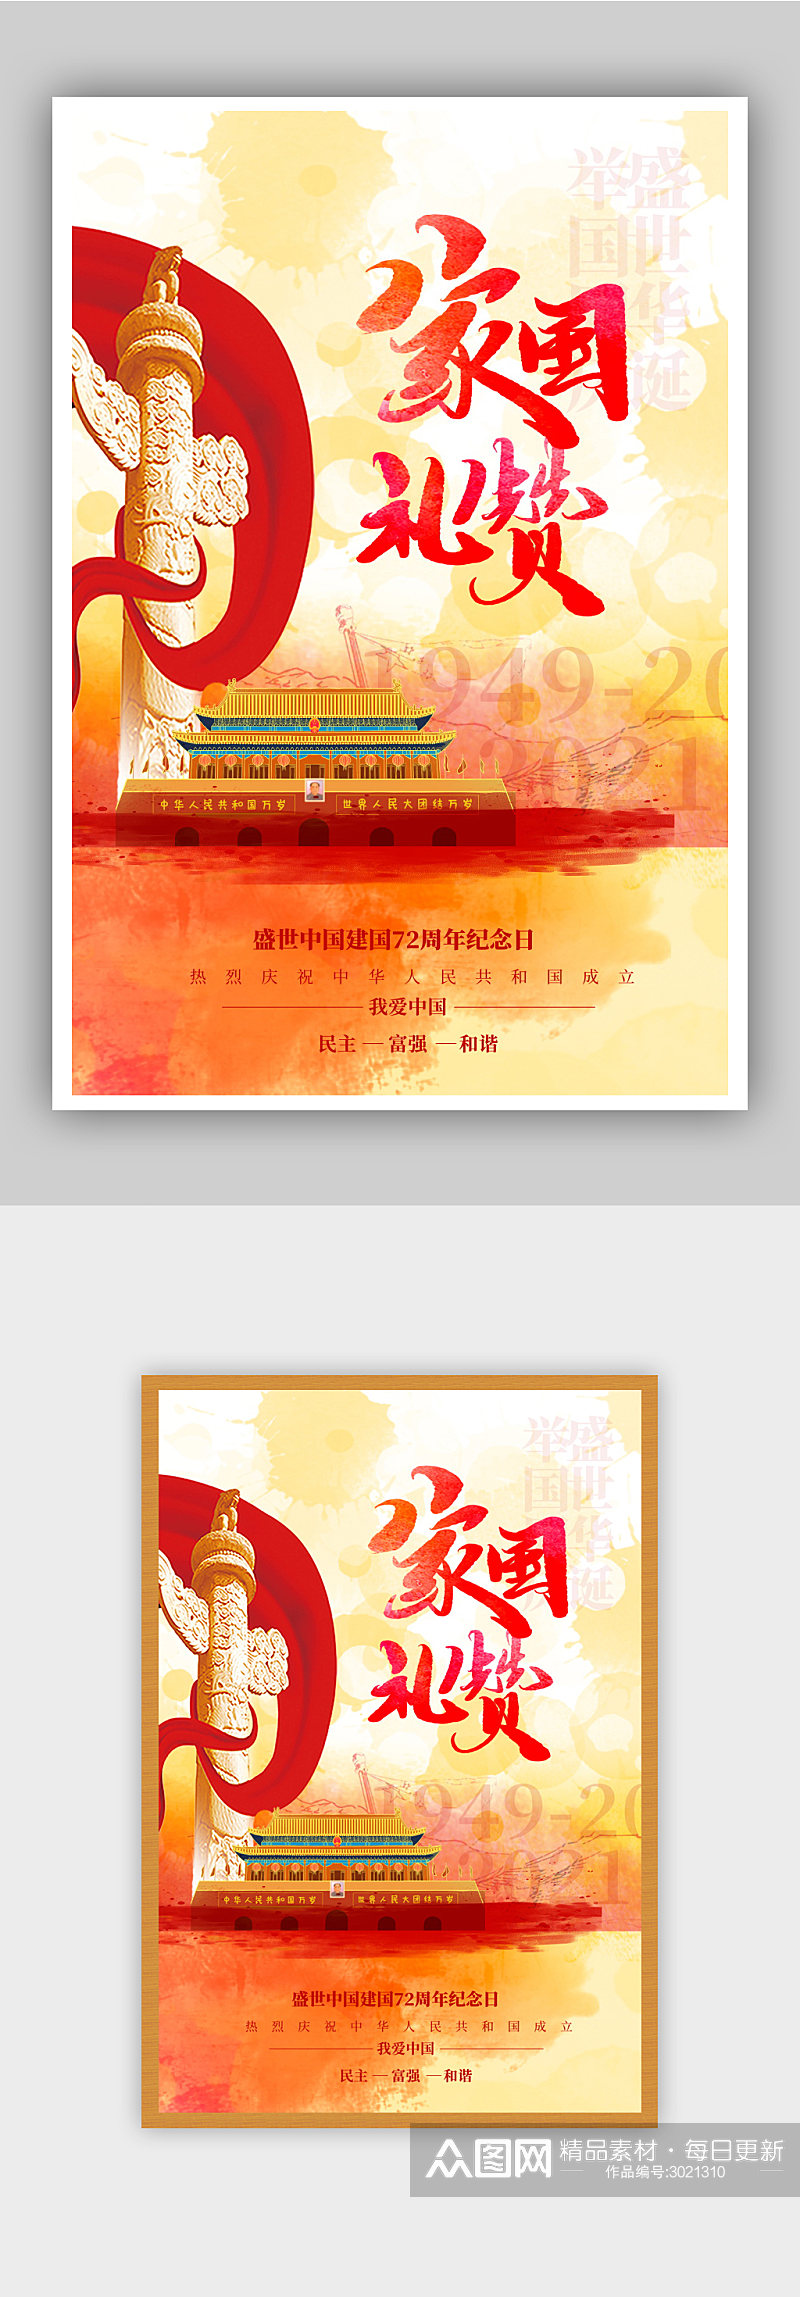 红色国庆节宣传海报素材